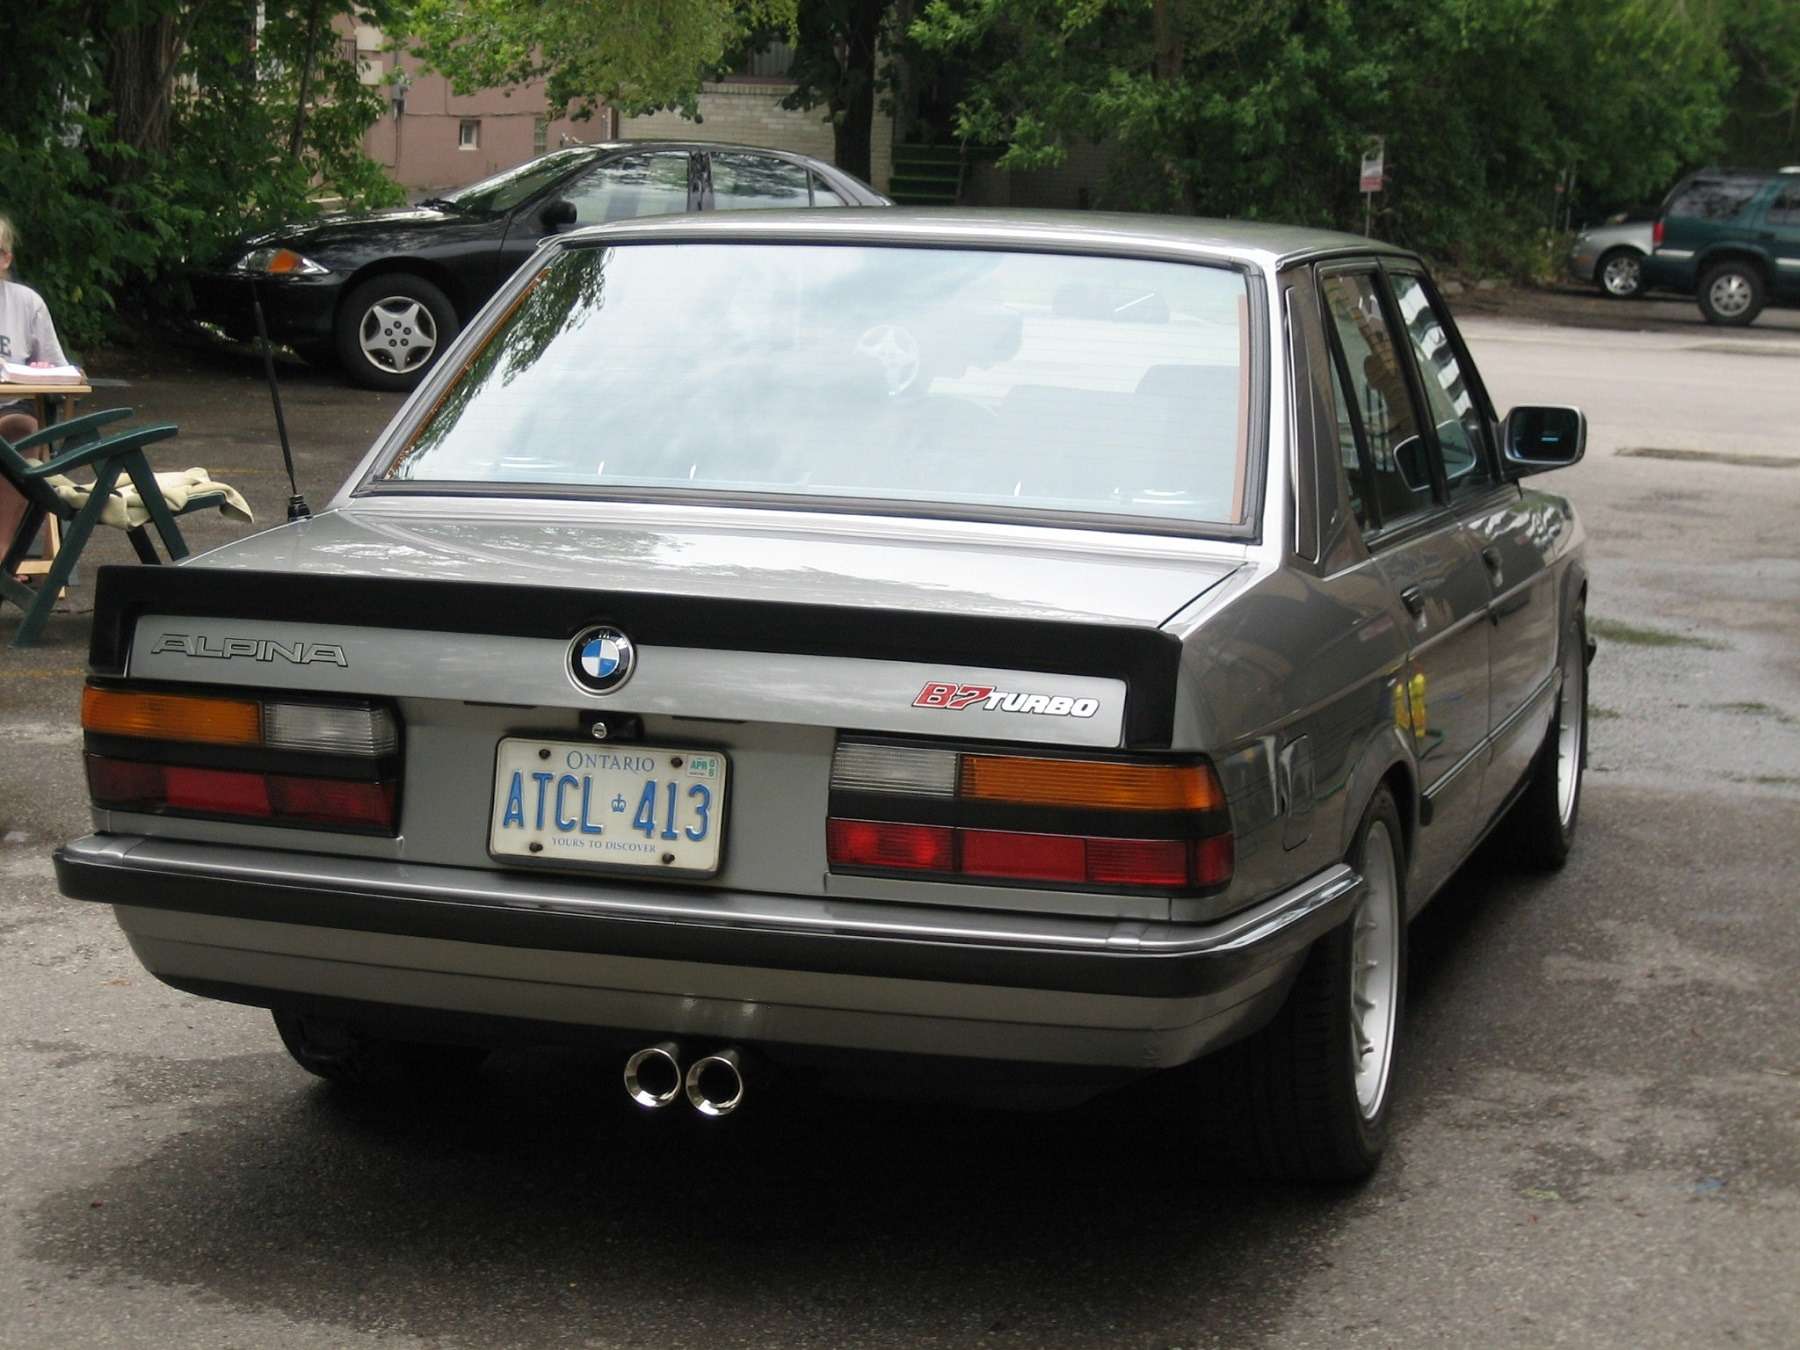 «Биммер» мечты: уникальная Alpina B7 Turbo по цене нового BMW — фото 739728